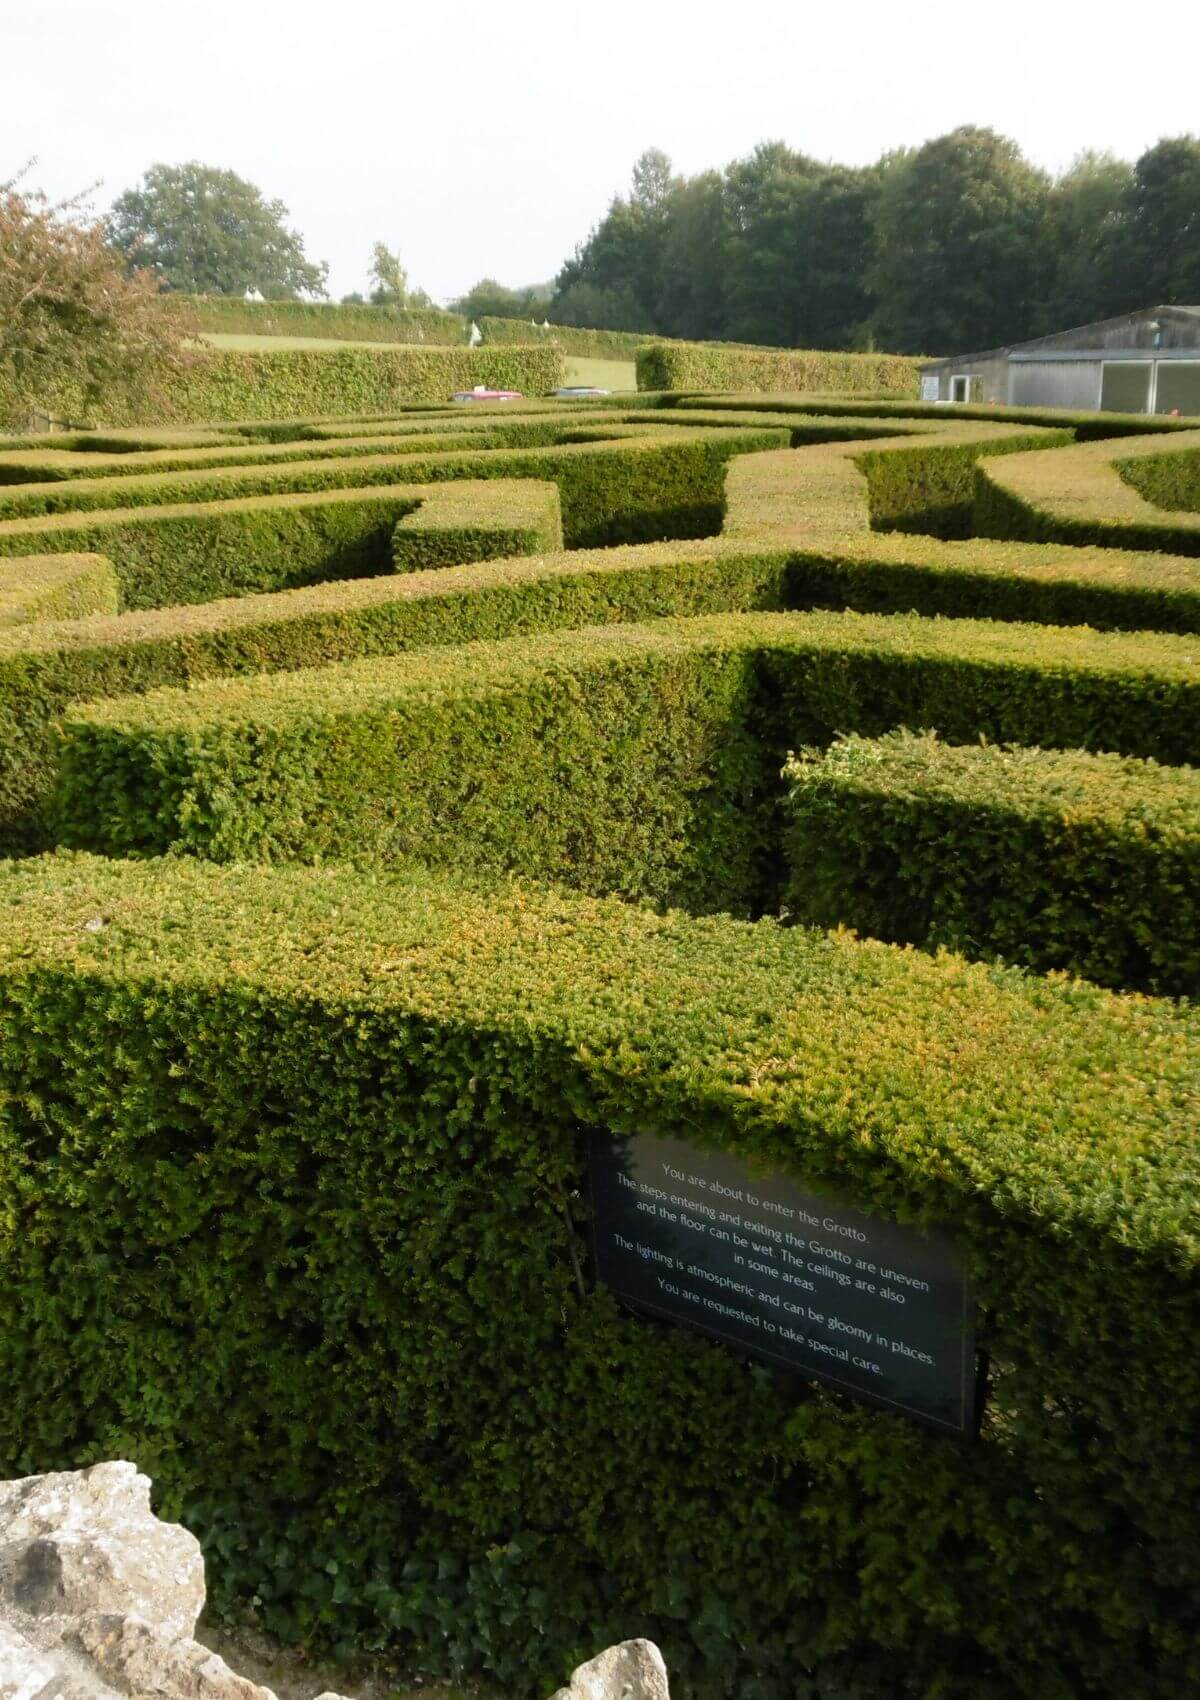 Leeds Castle Maze in Kent, England